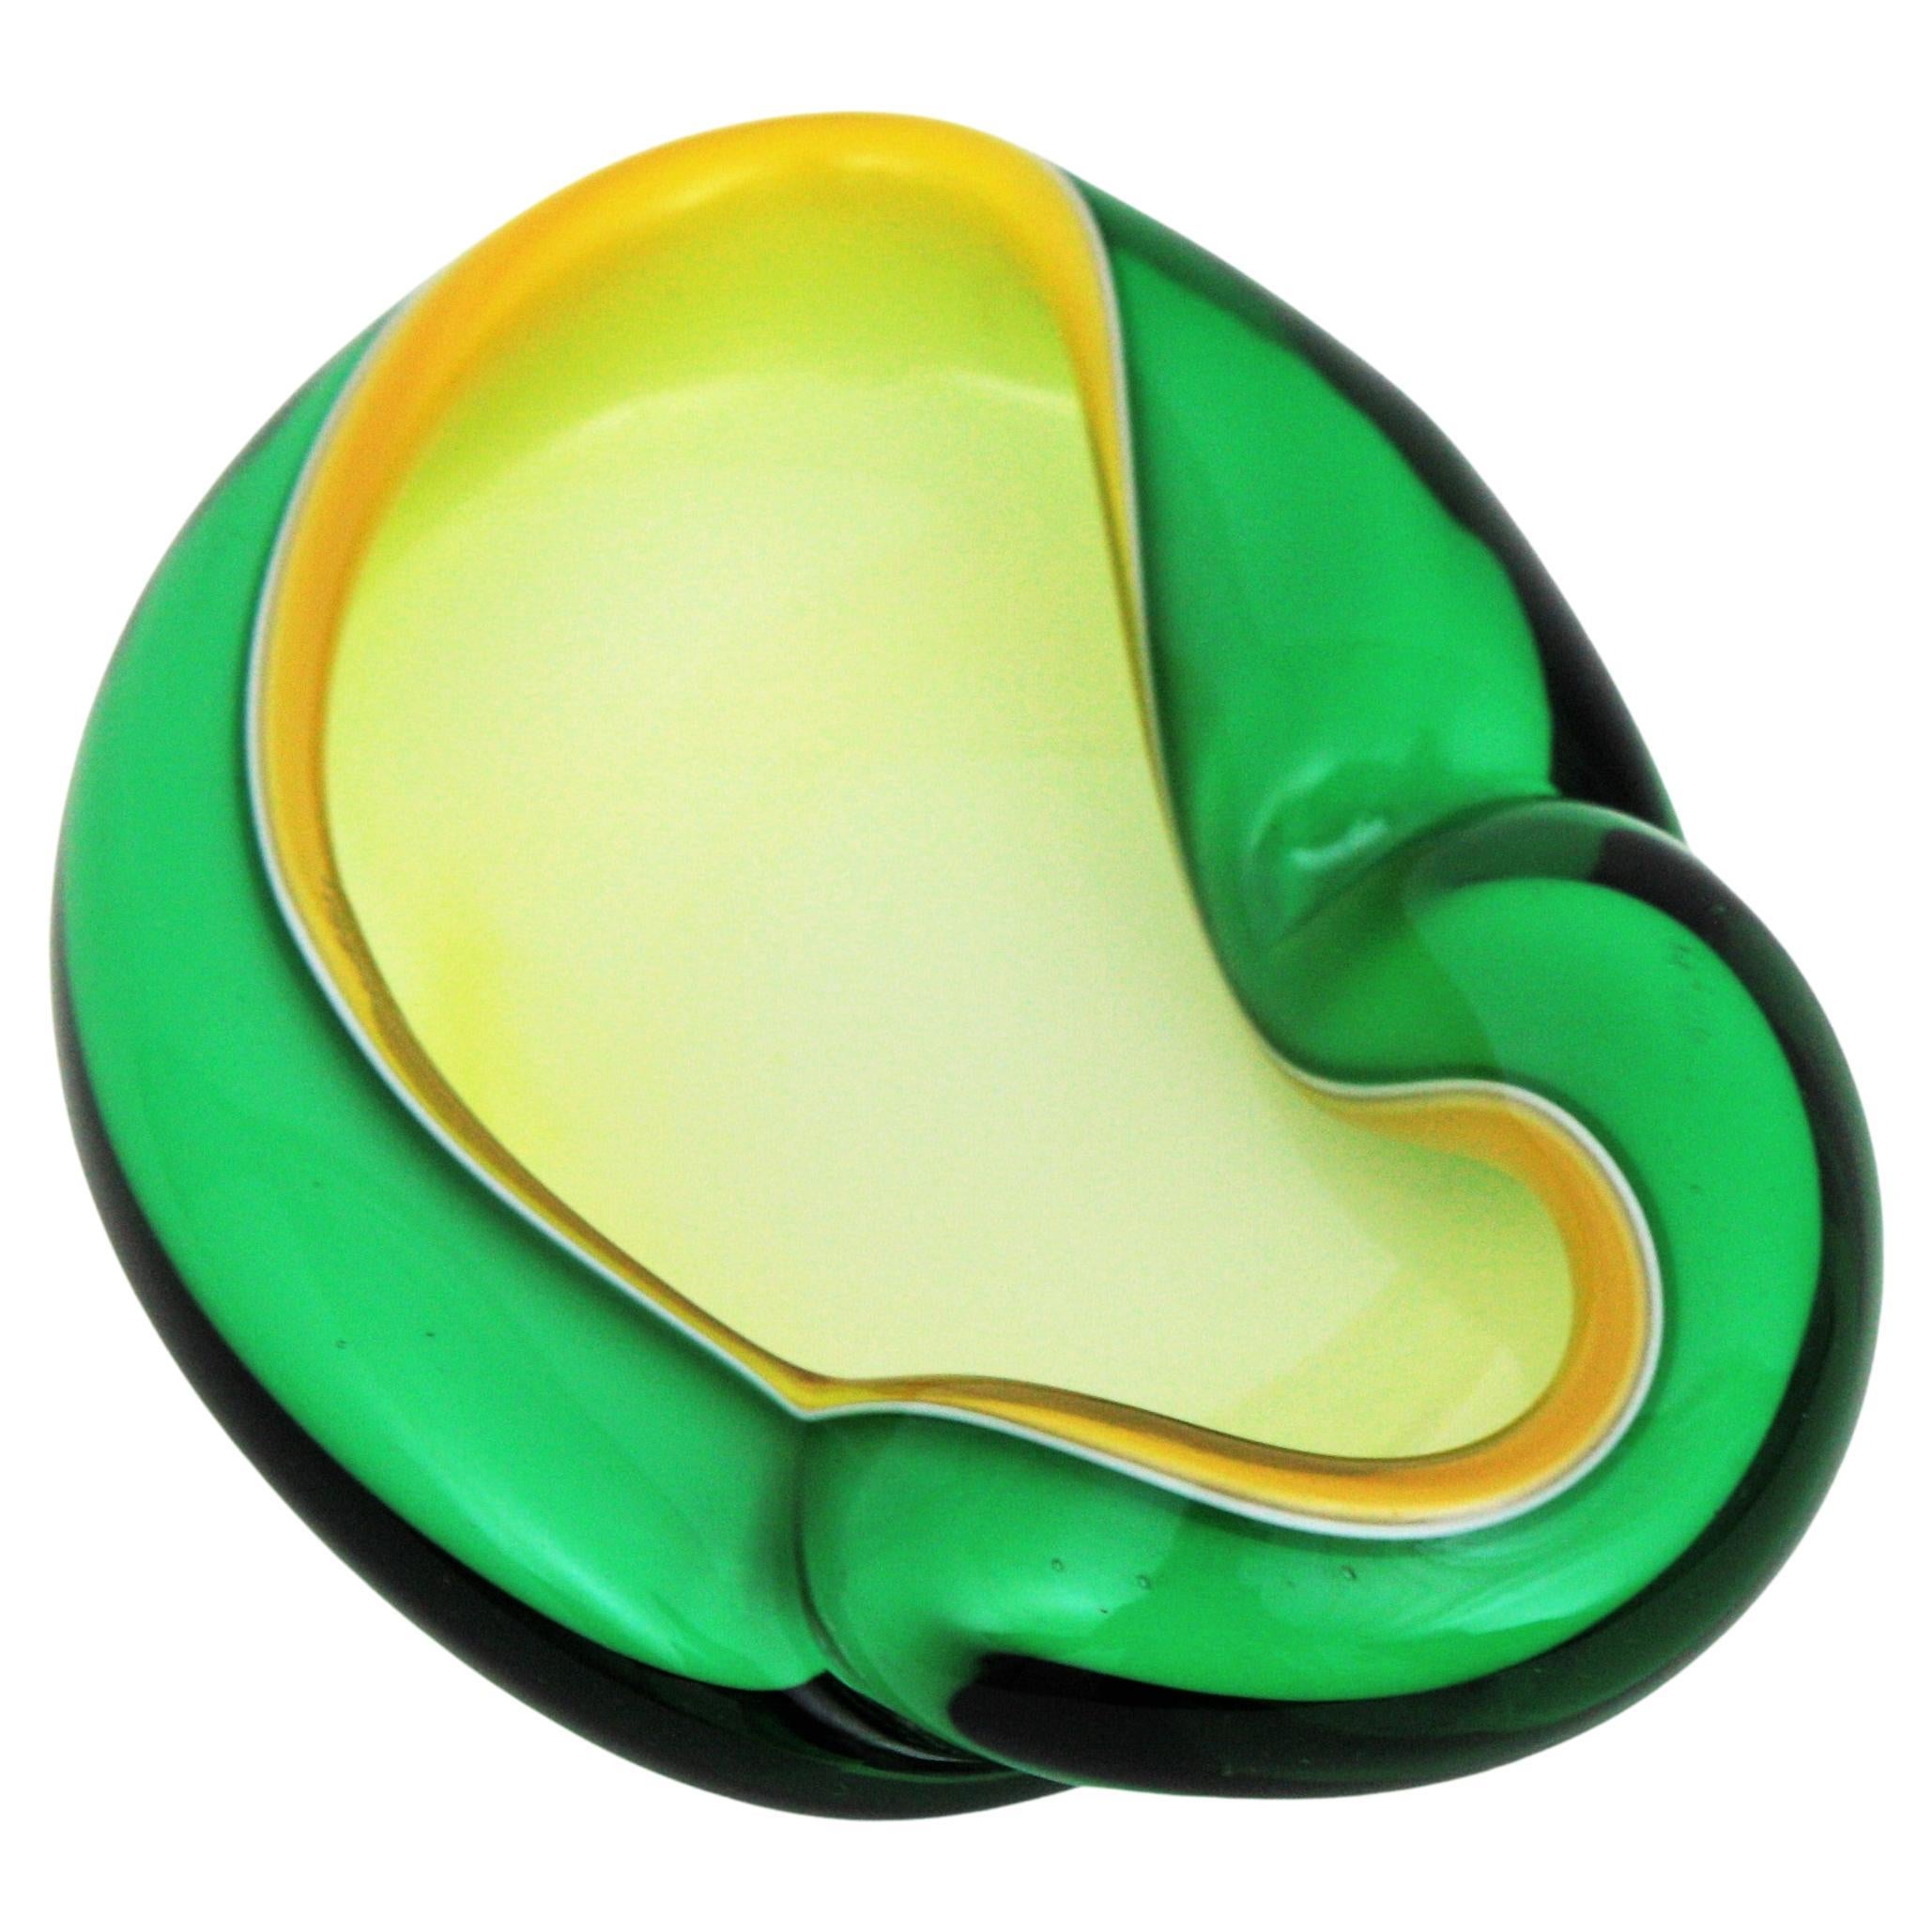 Bol ou cendrier en verre d'art italien soufflé à la bouche de Murano, vert, jaune et blanc, très coloré, avec bord replié. Attribué au designer Alfredo Barbini.
Ce bol asymétrique et biomorphique présente des formes et des couleurs étonnantes grâce